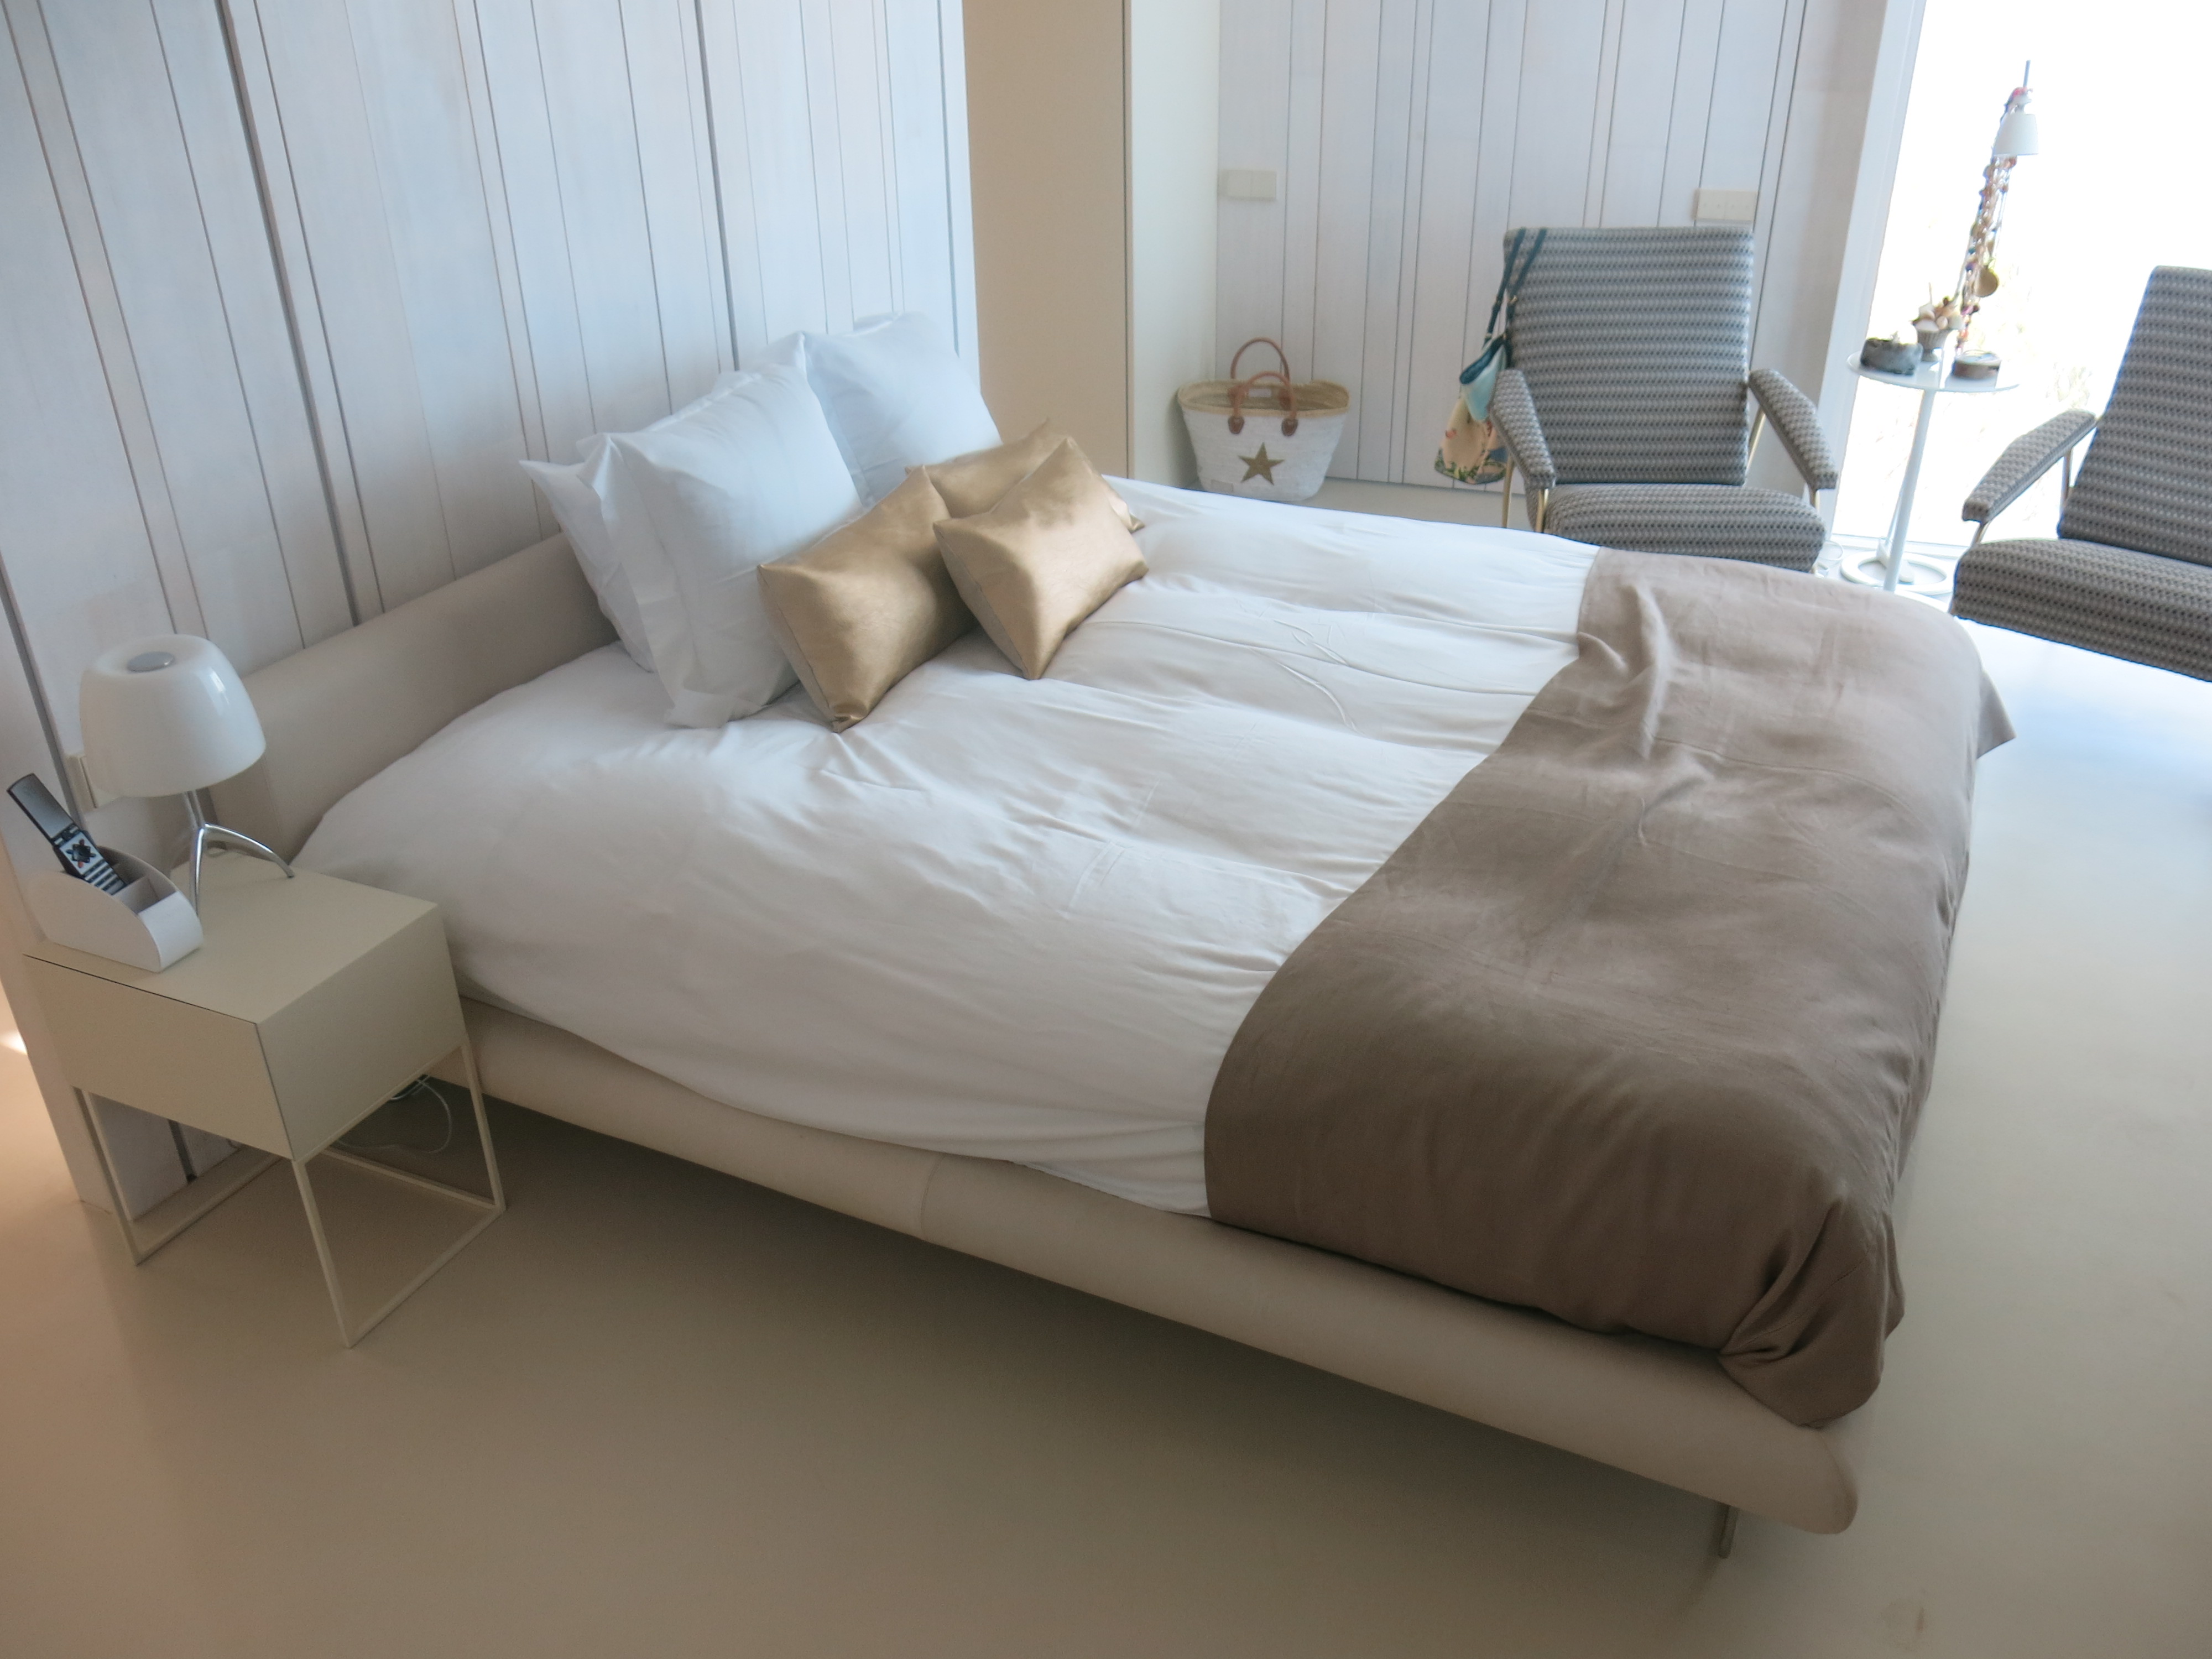 Dormitorio microcemento Marfil en piso radiante